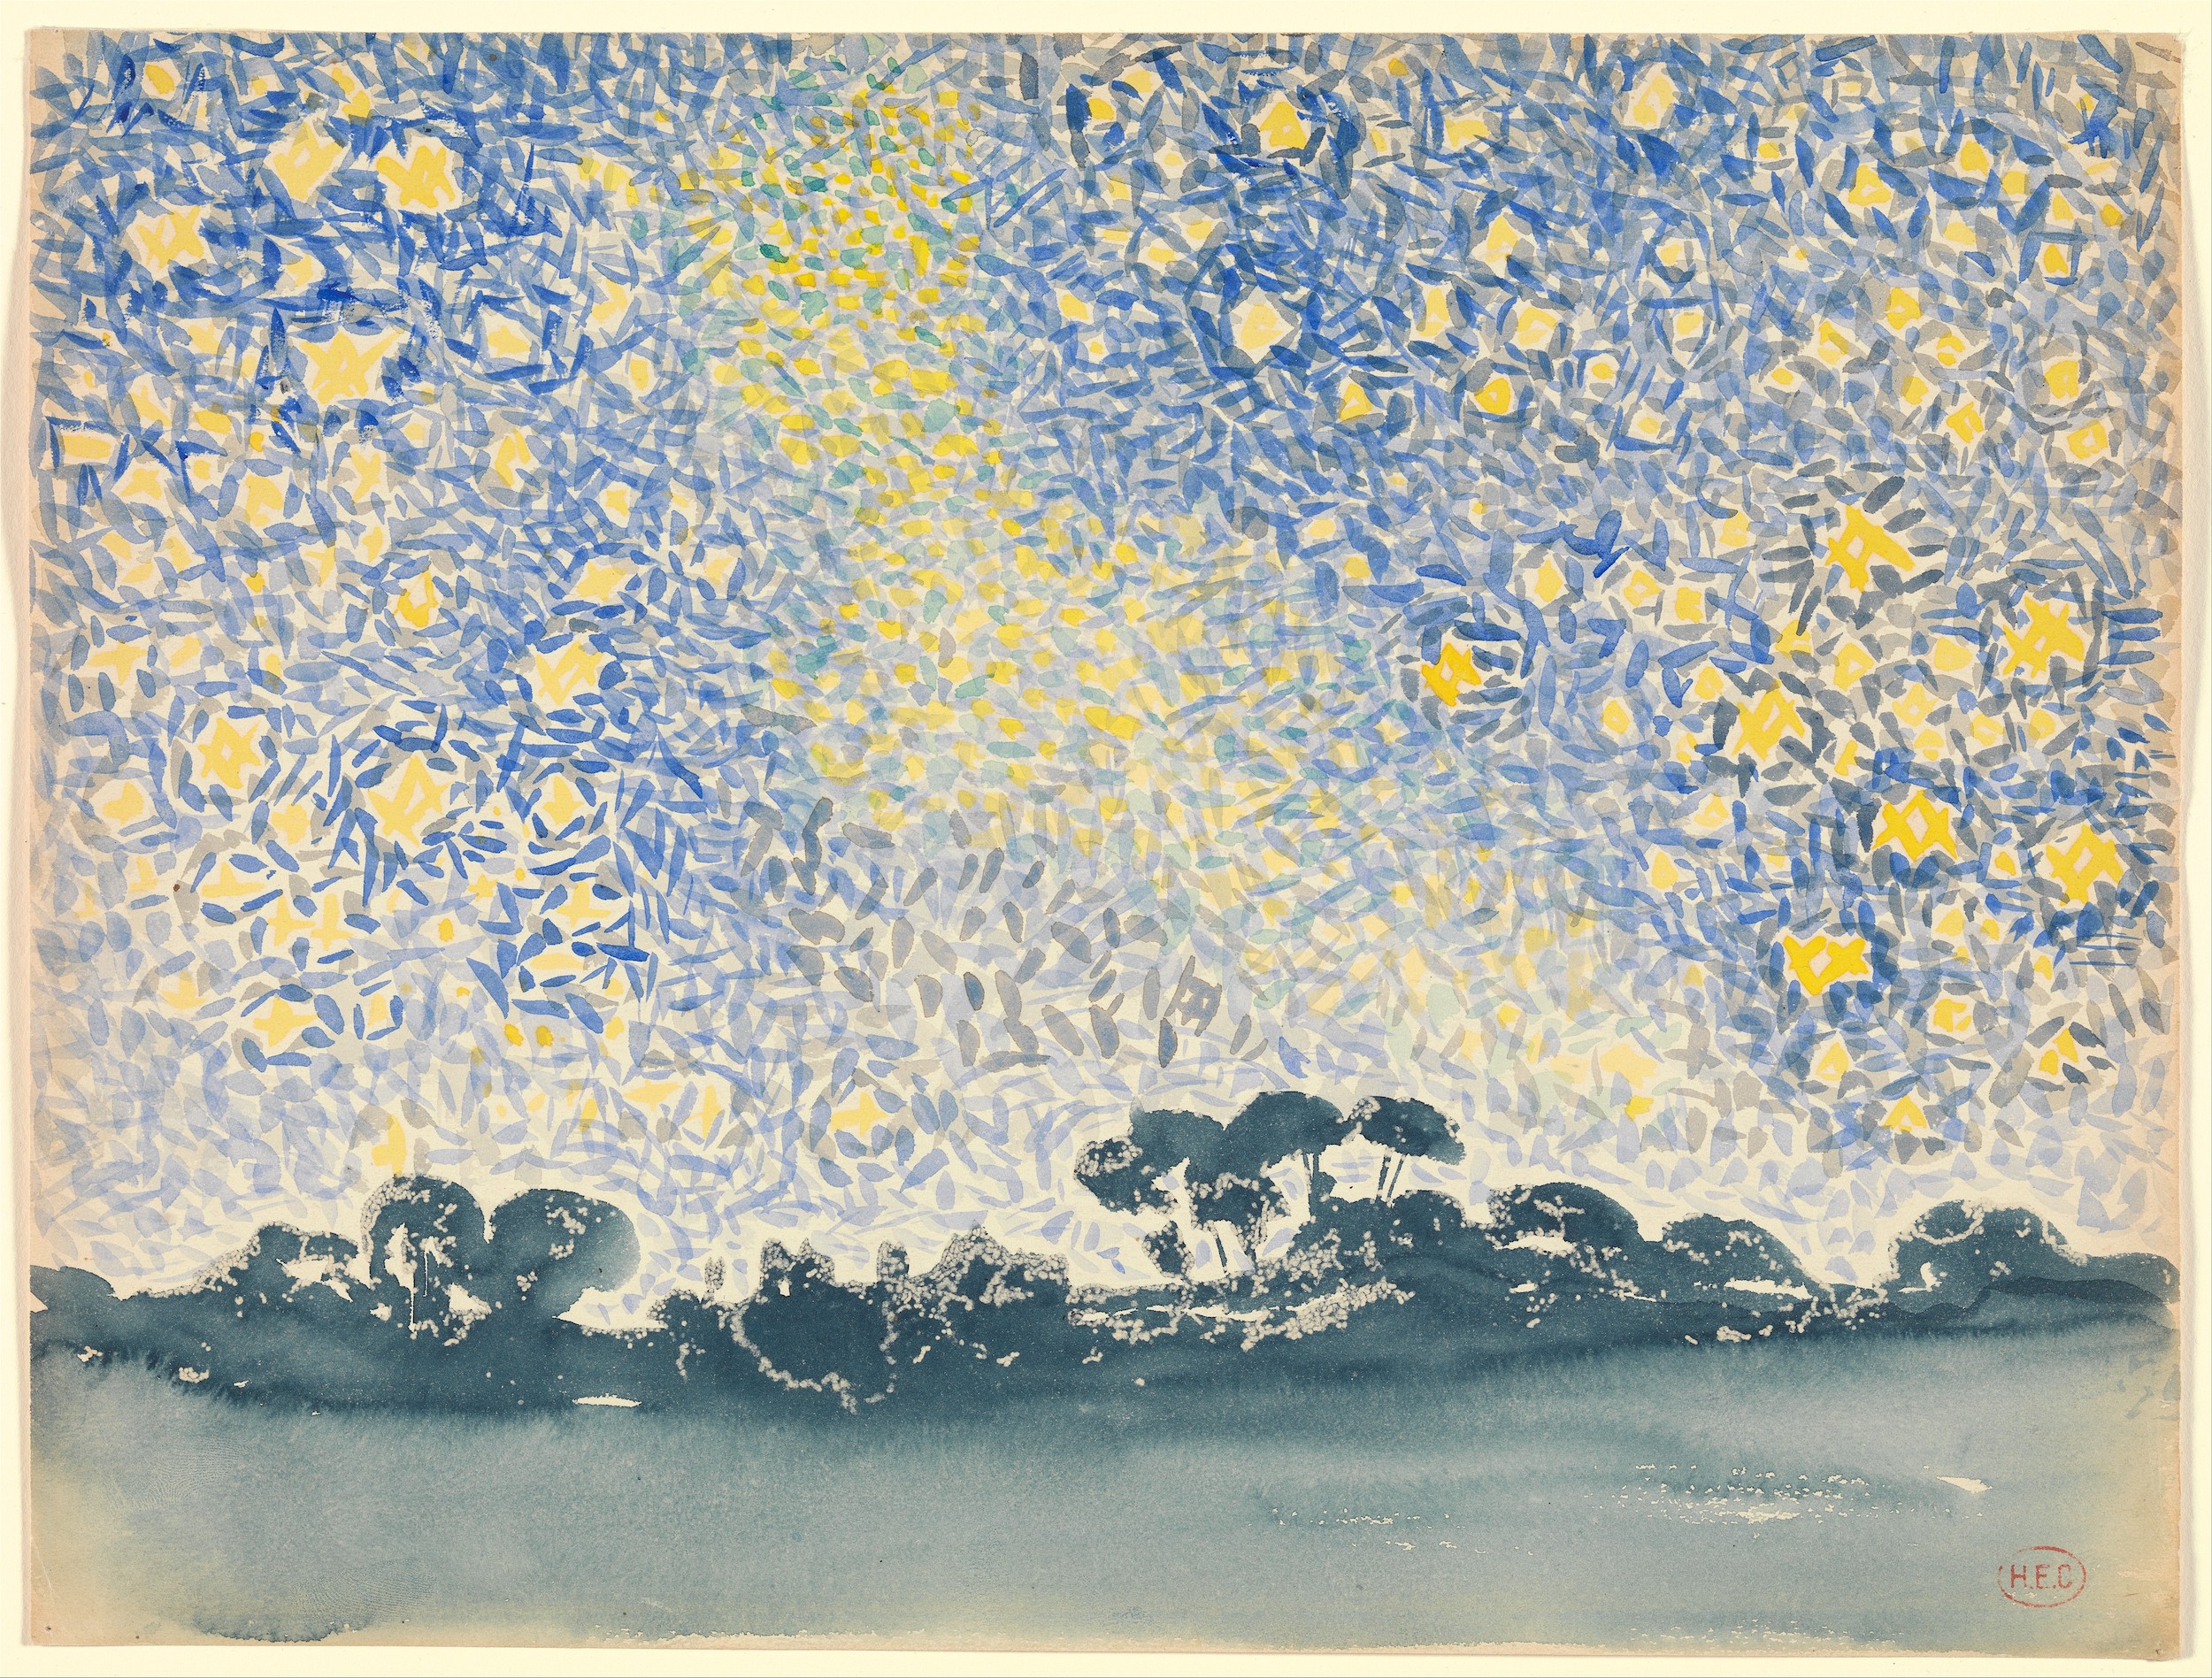 별이 있는 풍경 (Landscape with Stars) by Henri-Edmond Cross - 1905–1908년경 - 24.4 x 32.1cm 